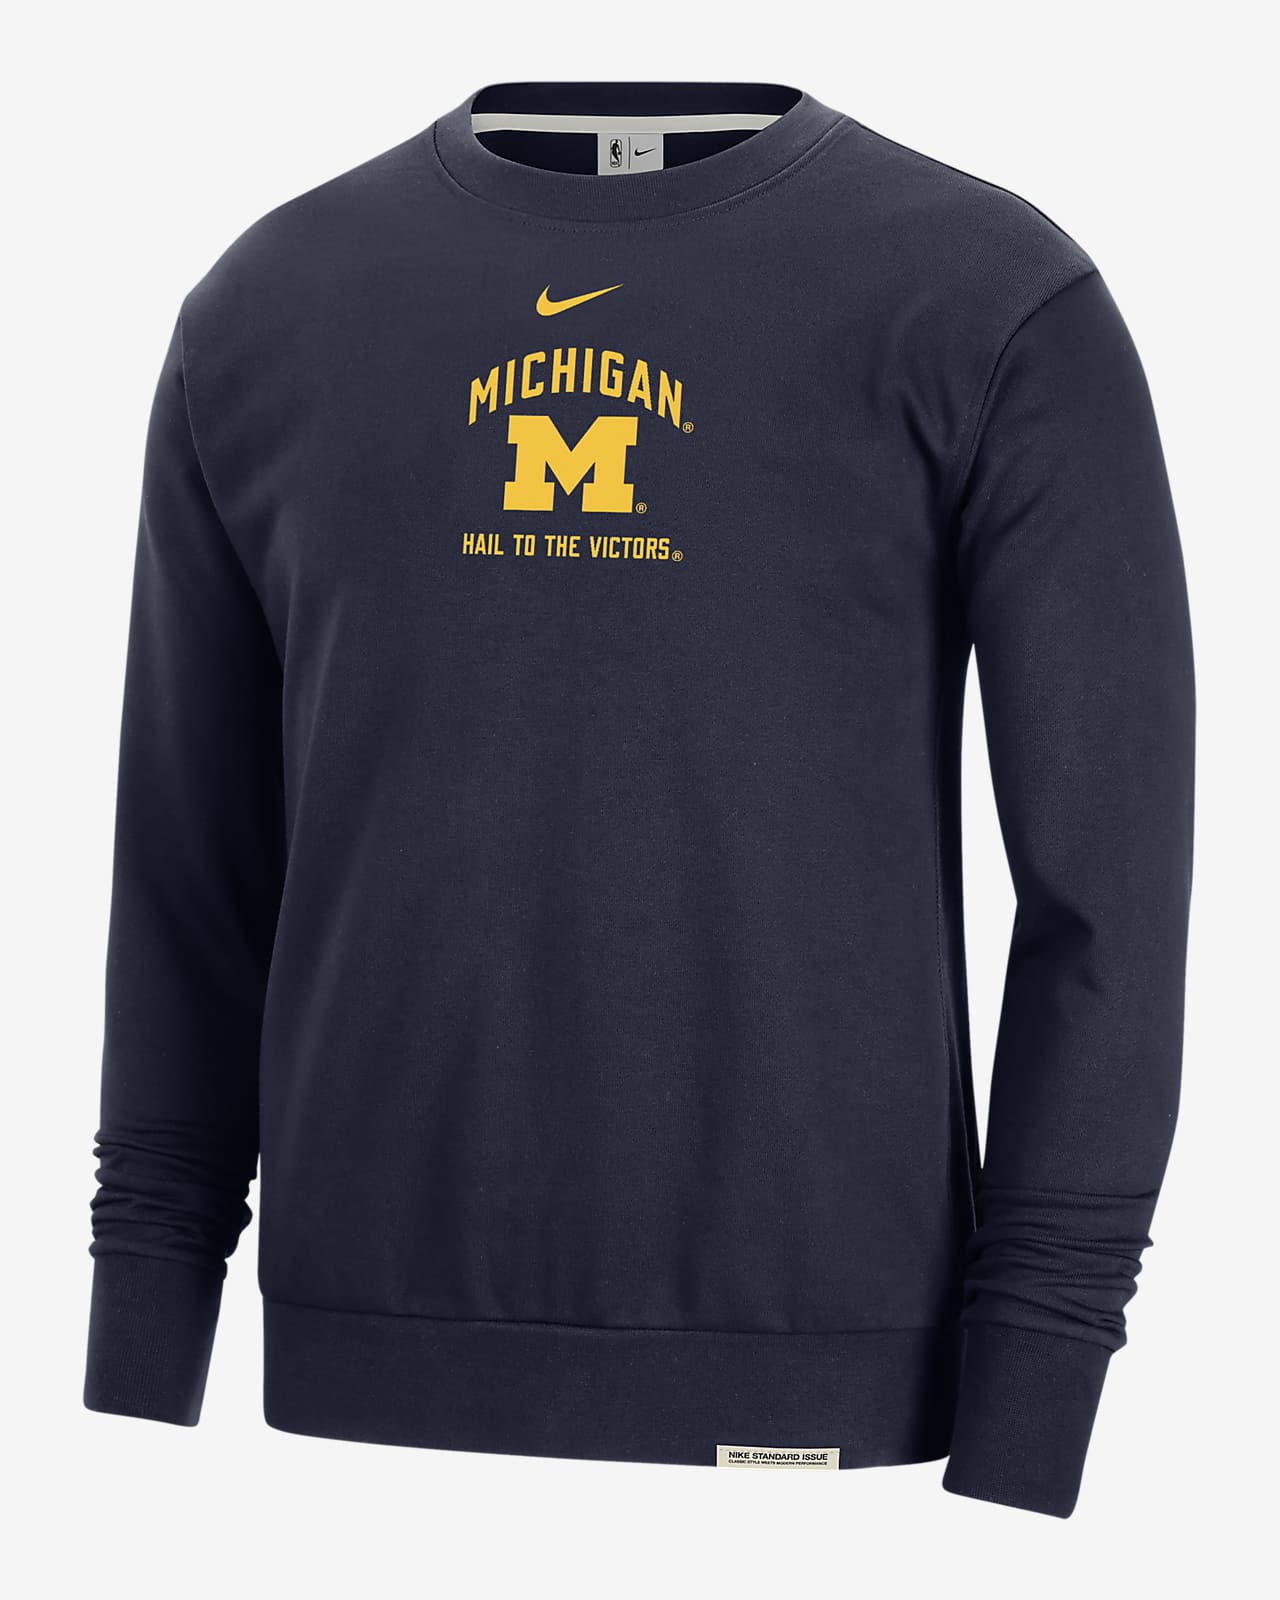 Michigan Standard Issue Men's Nike College Fleece Crew-Neck Sweatshirt